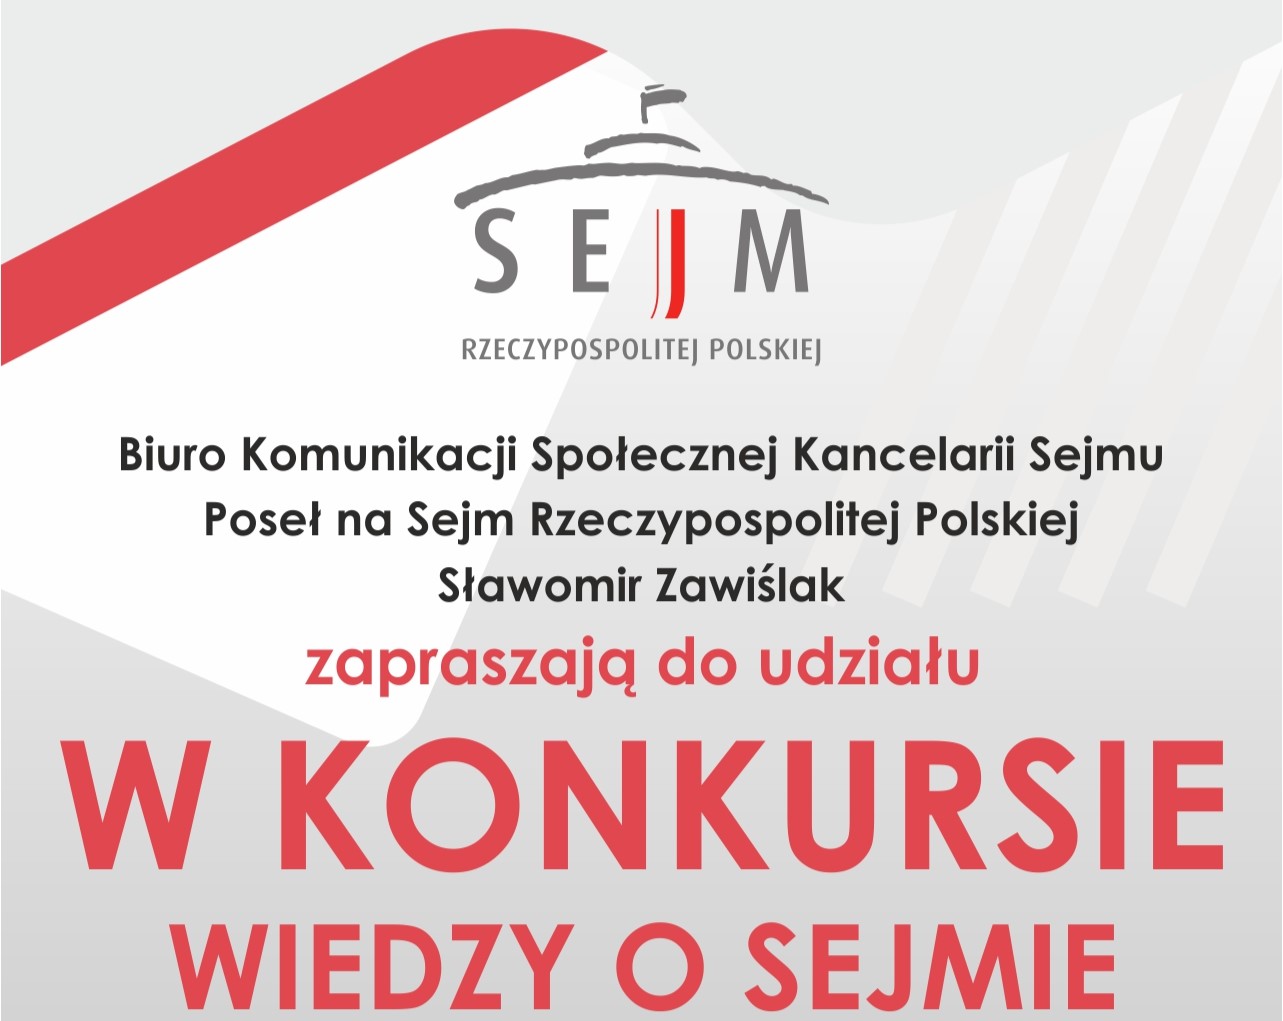 Zaproszenie dla uczniów szkół ponadpodstawowych do uczestnictwa w konkursie Wiedzy o Sejmie 